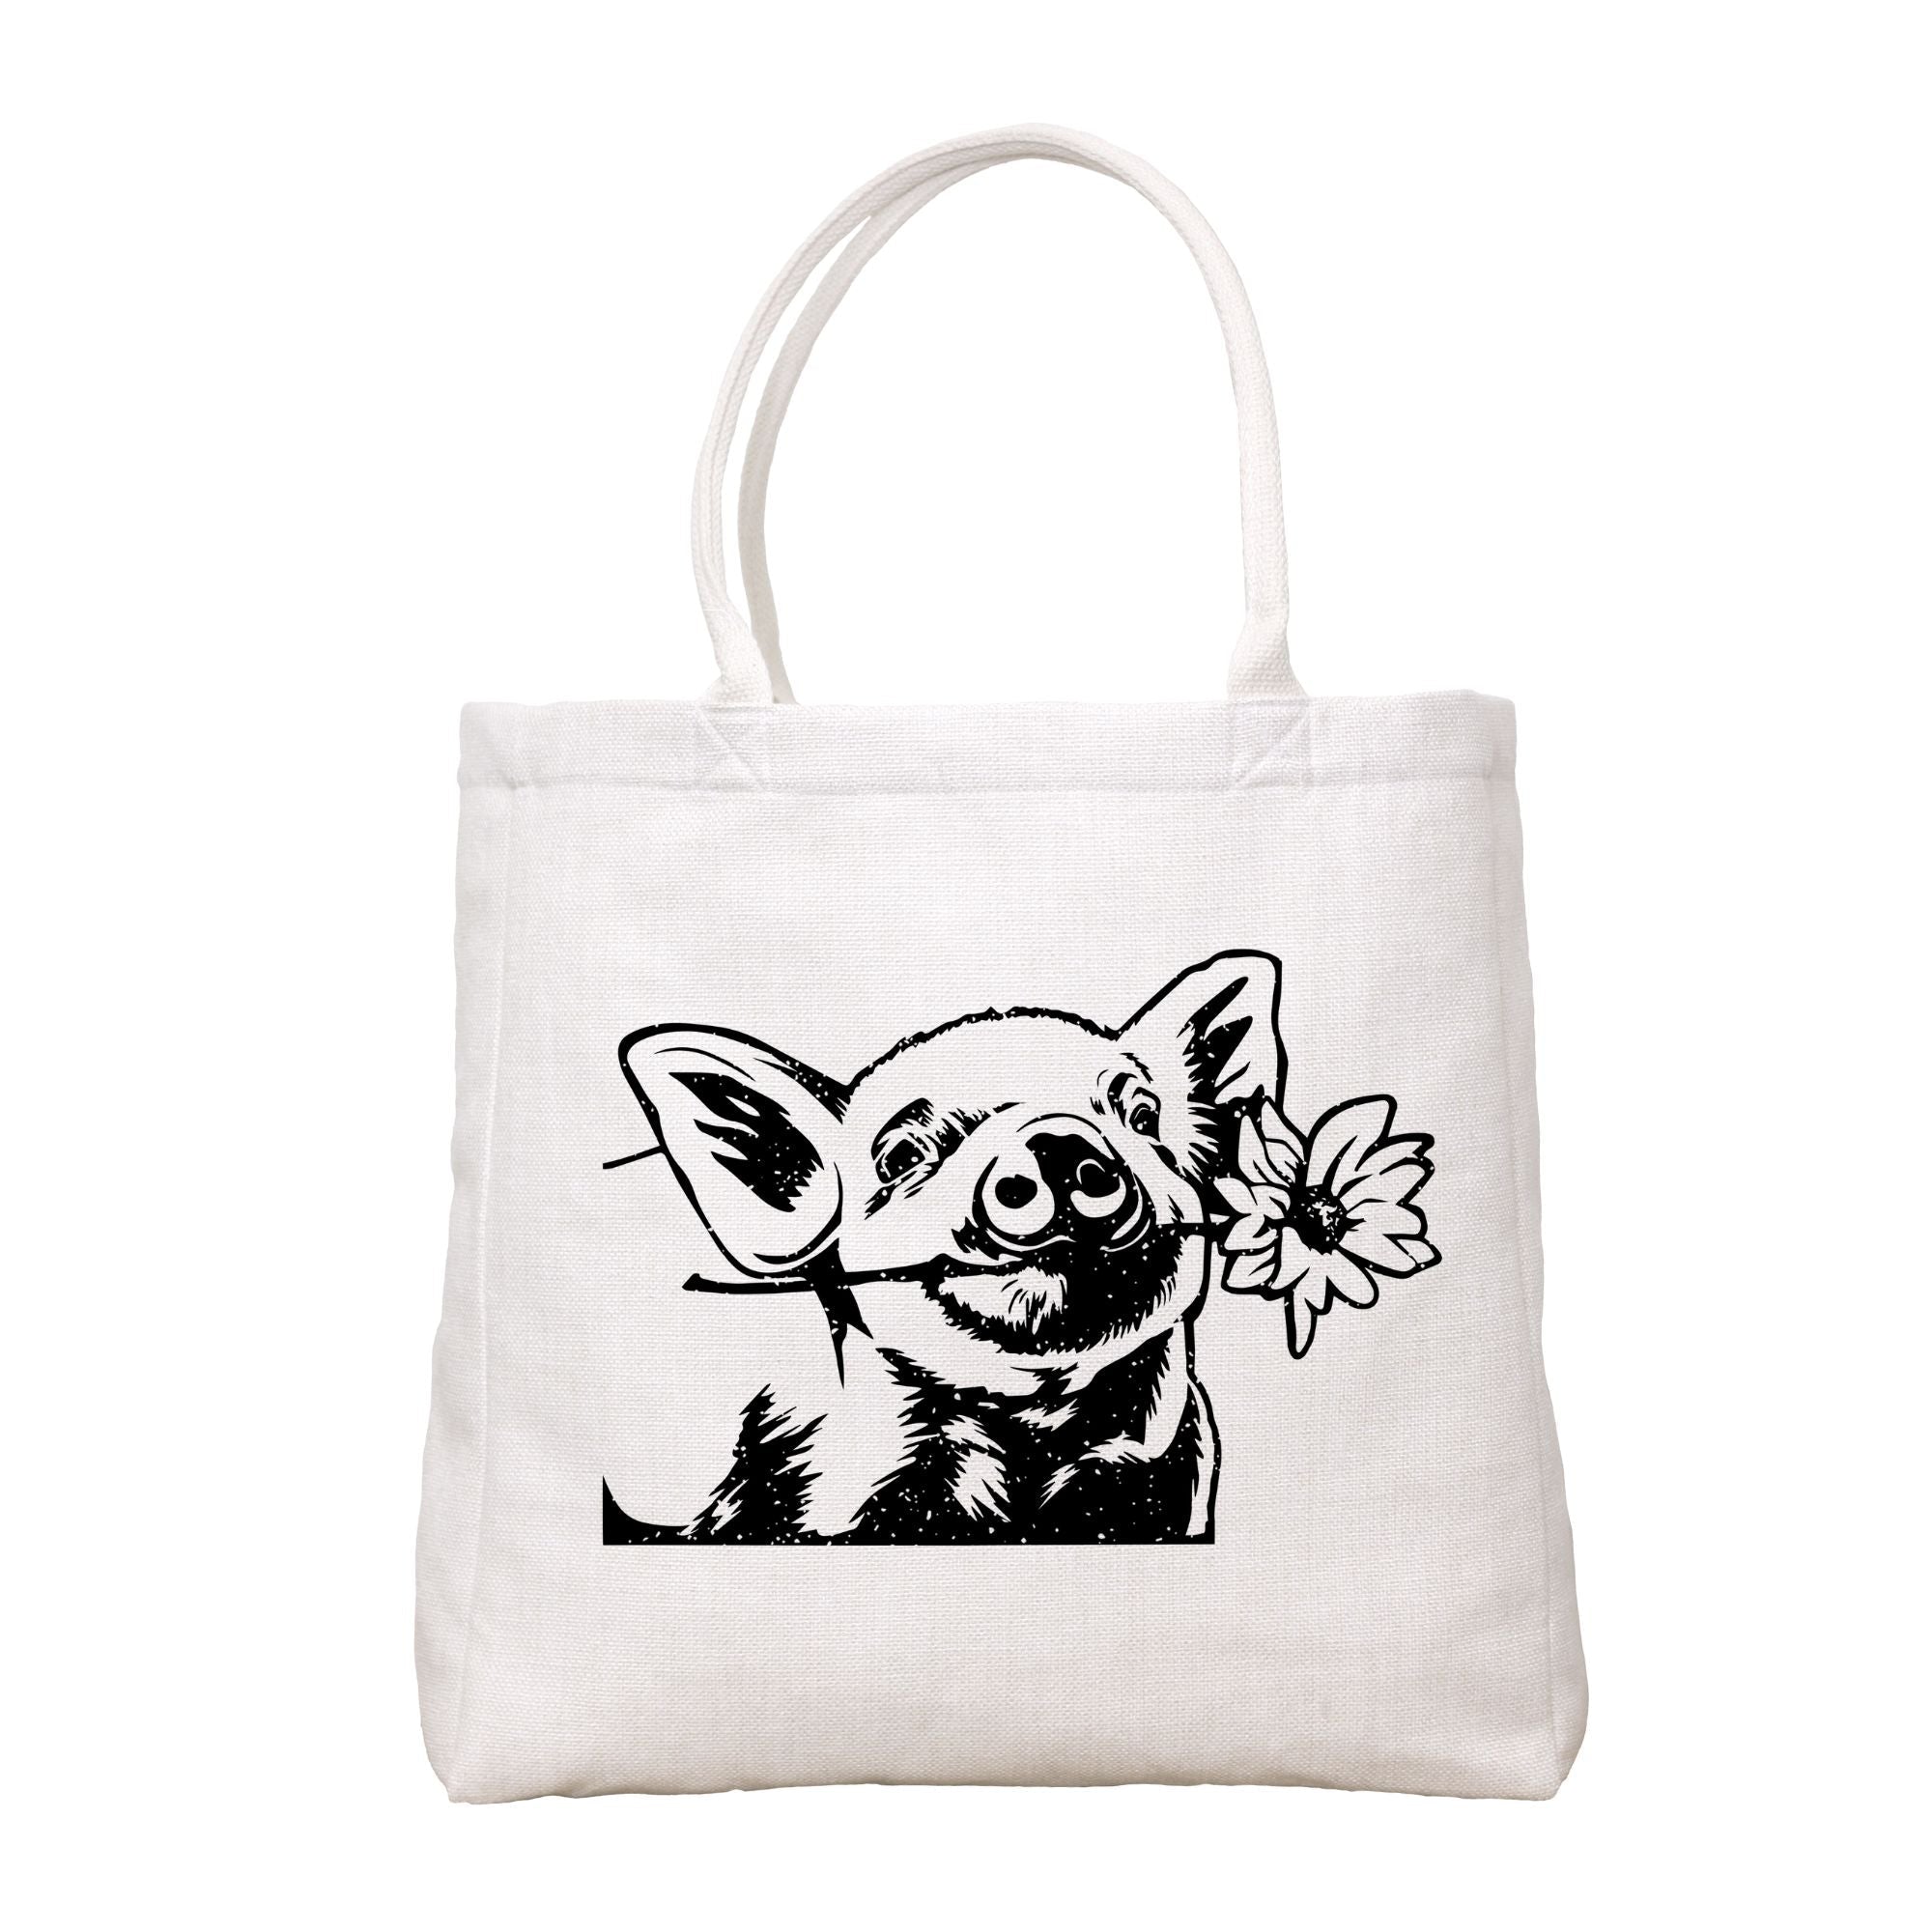 Curious Pig Tote Bag